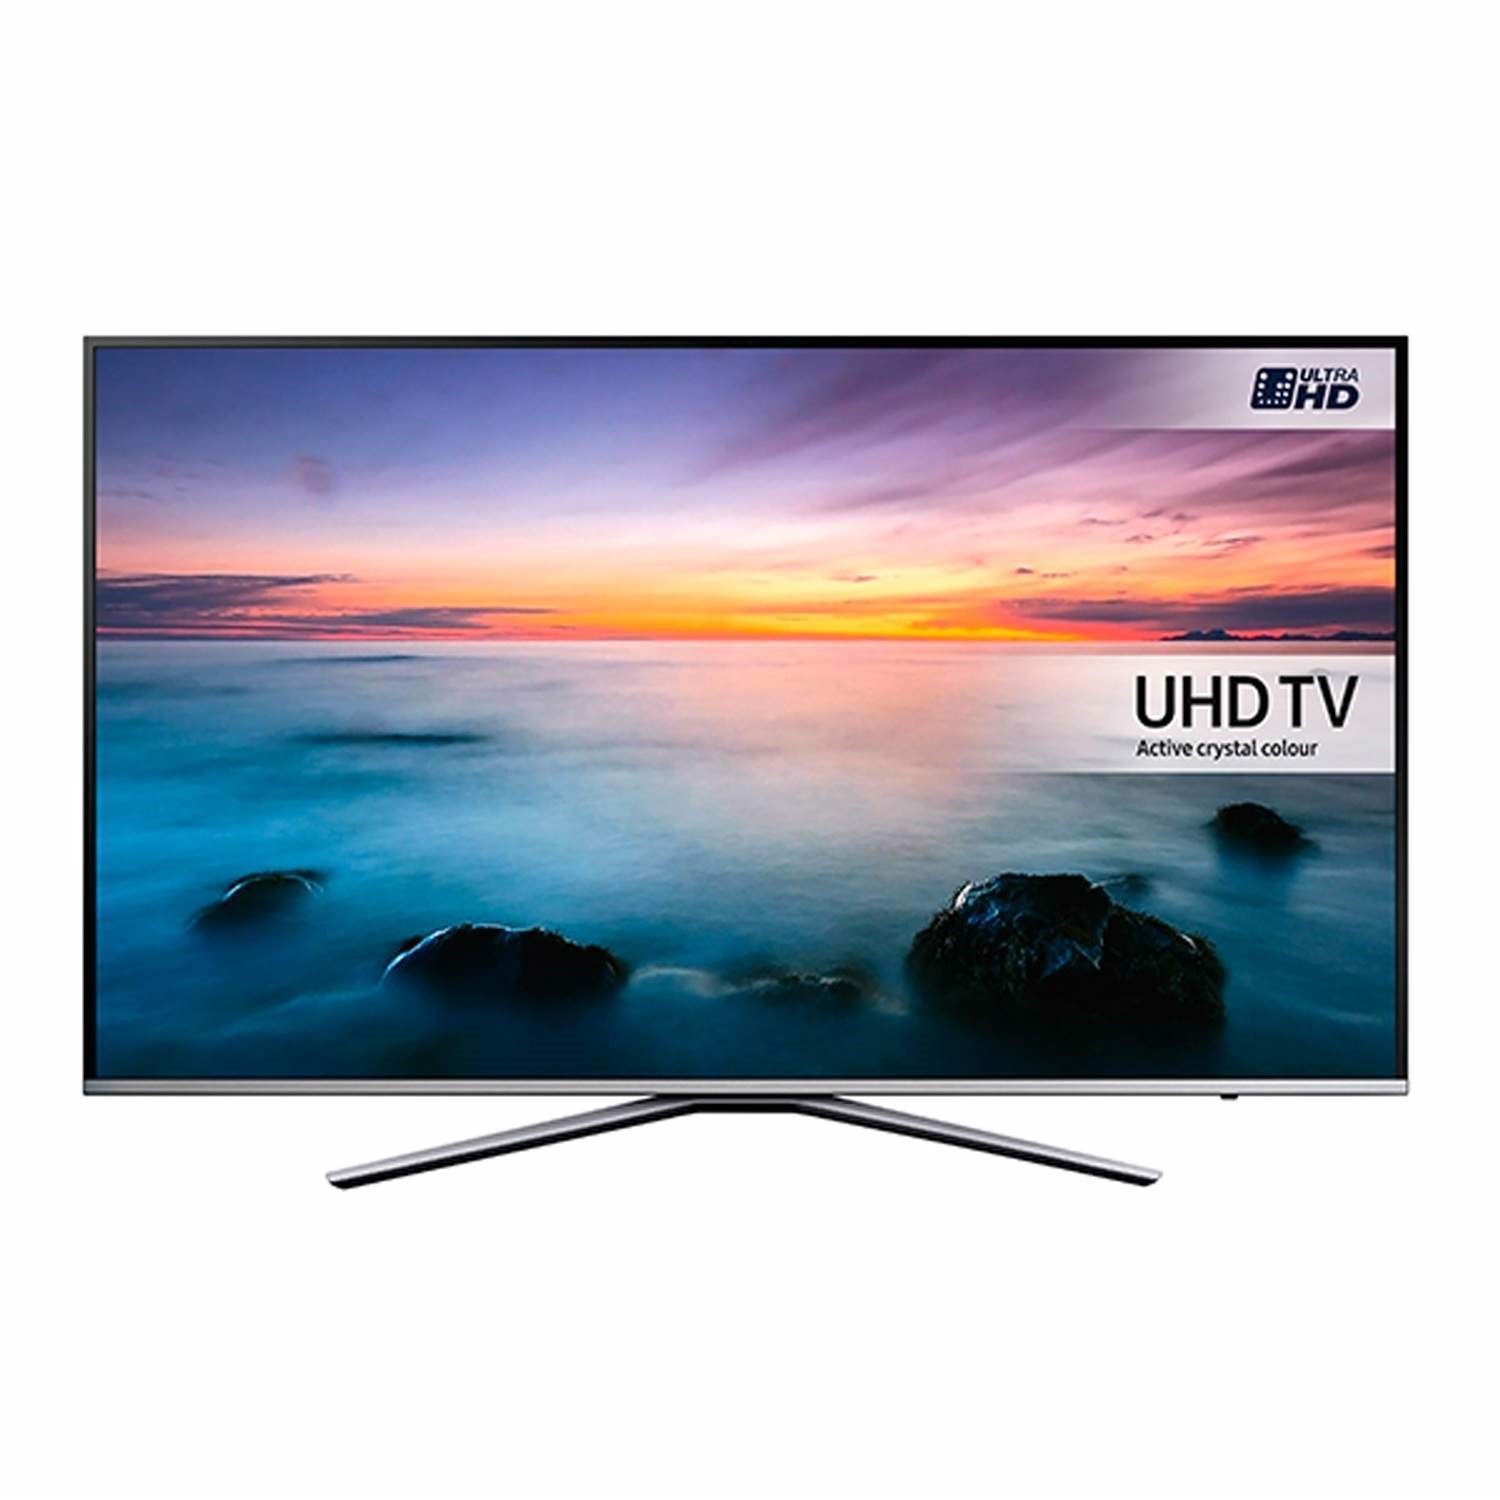 Озон заказать телевизор. Samsung ue49ku6400u. Samsung телевизор UHD TV 40 дюймов. Телевизор Samsung 35 дюймов Smart TV. Samsung UE 43 K 6510.